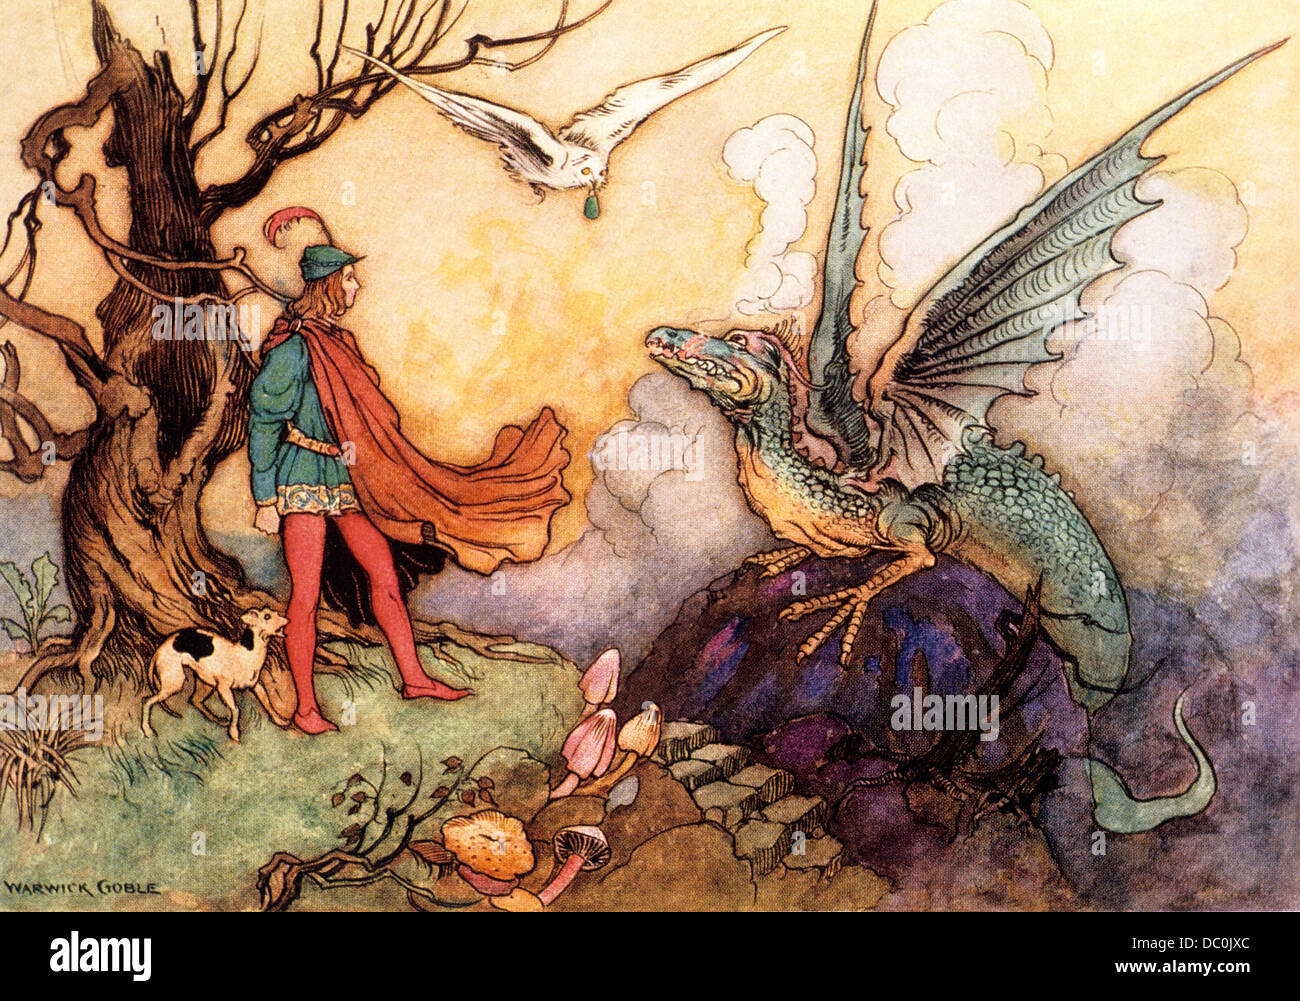 1910s illustrazione favola del principe e il drago DA WARWICK GOBLE Foto Stock